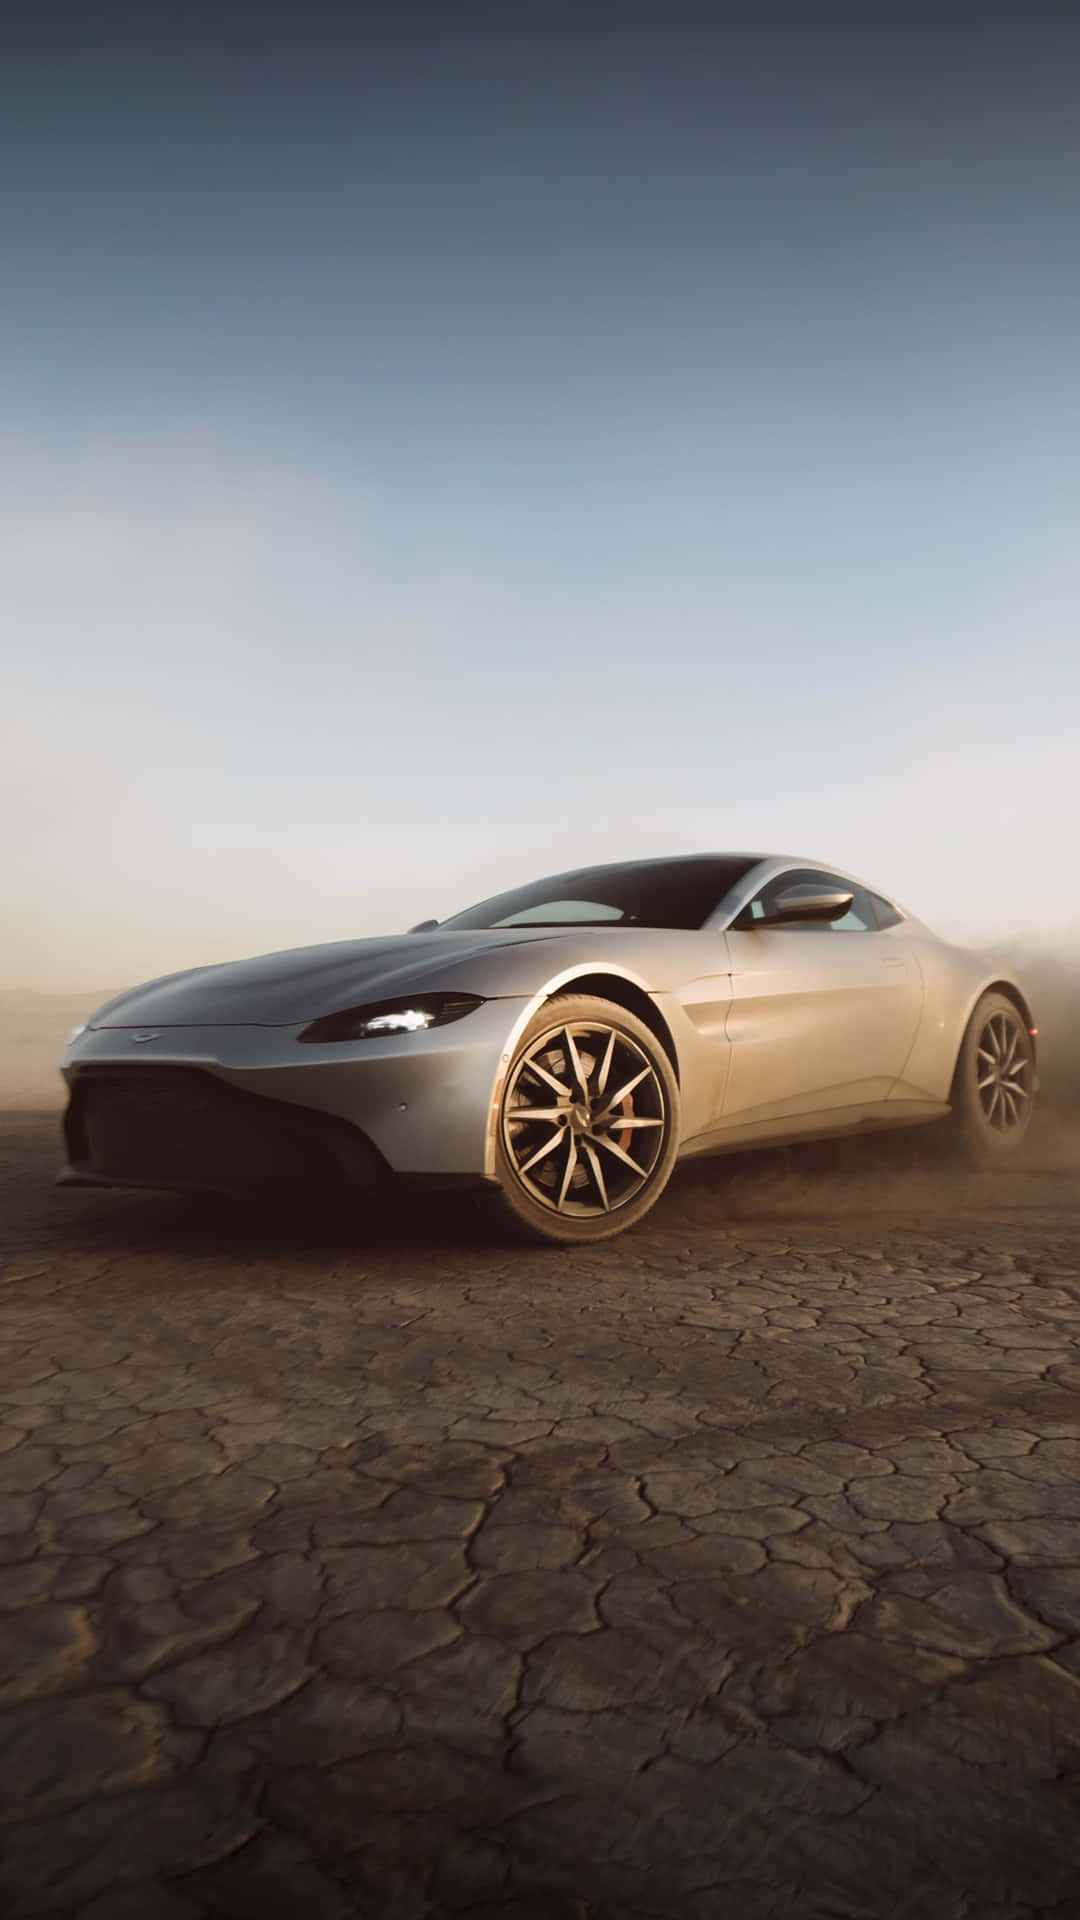 The stunning Aston Martin Vantage